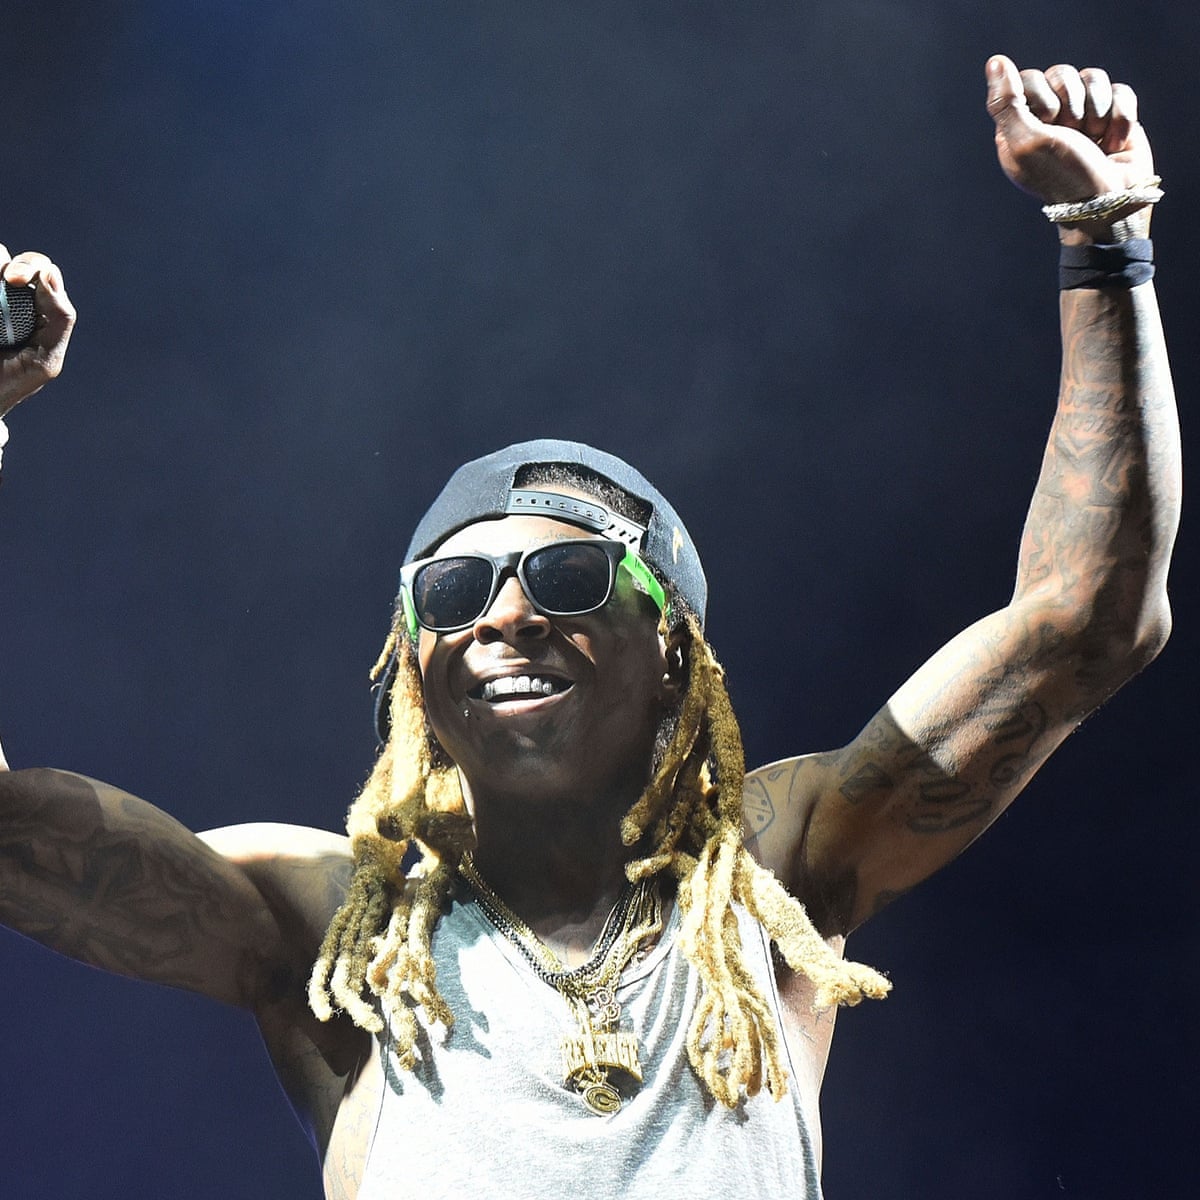 Wayne dead lil Lil Wayne: